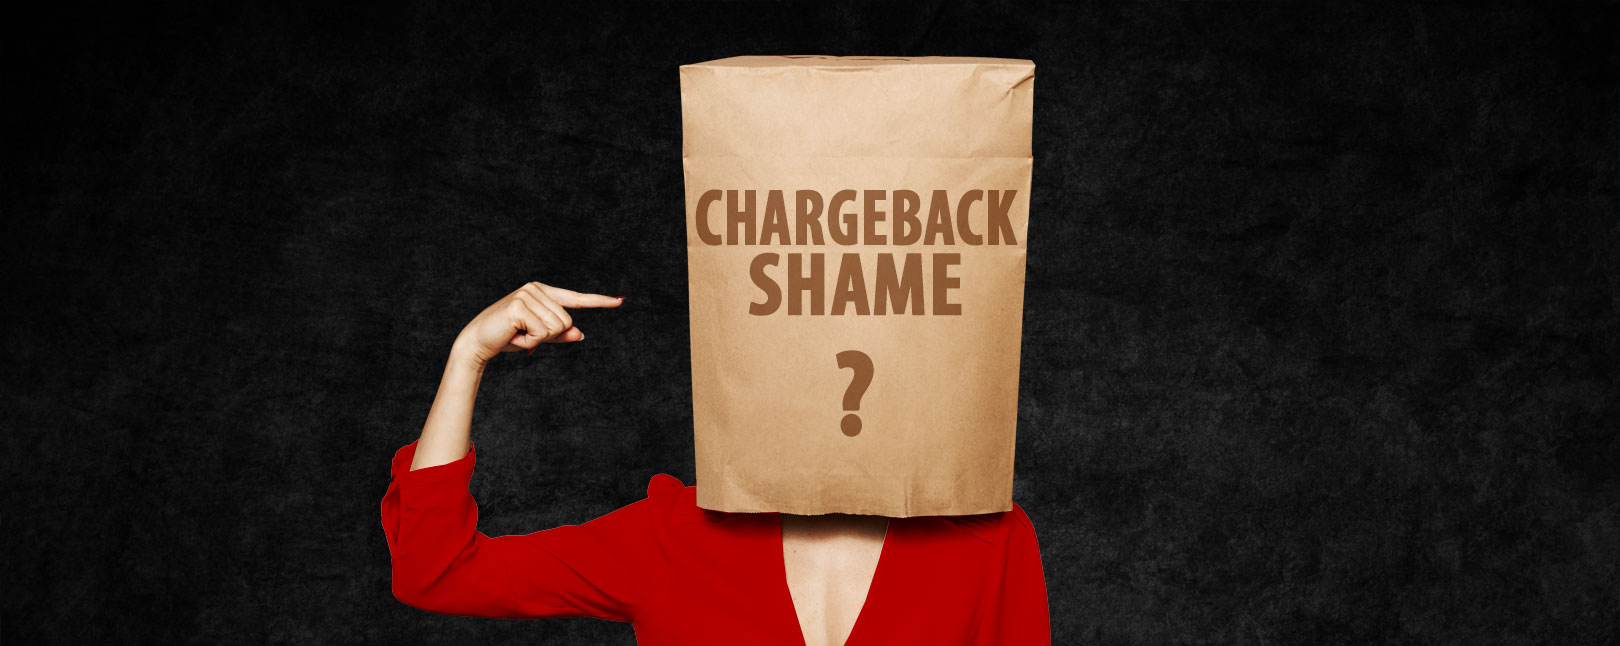 Chargeback Shame